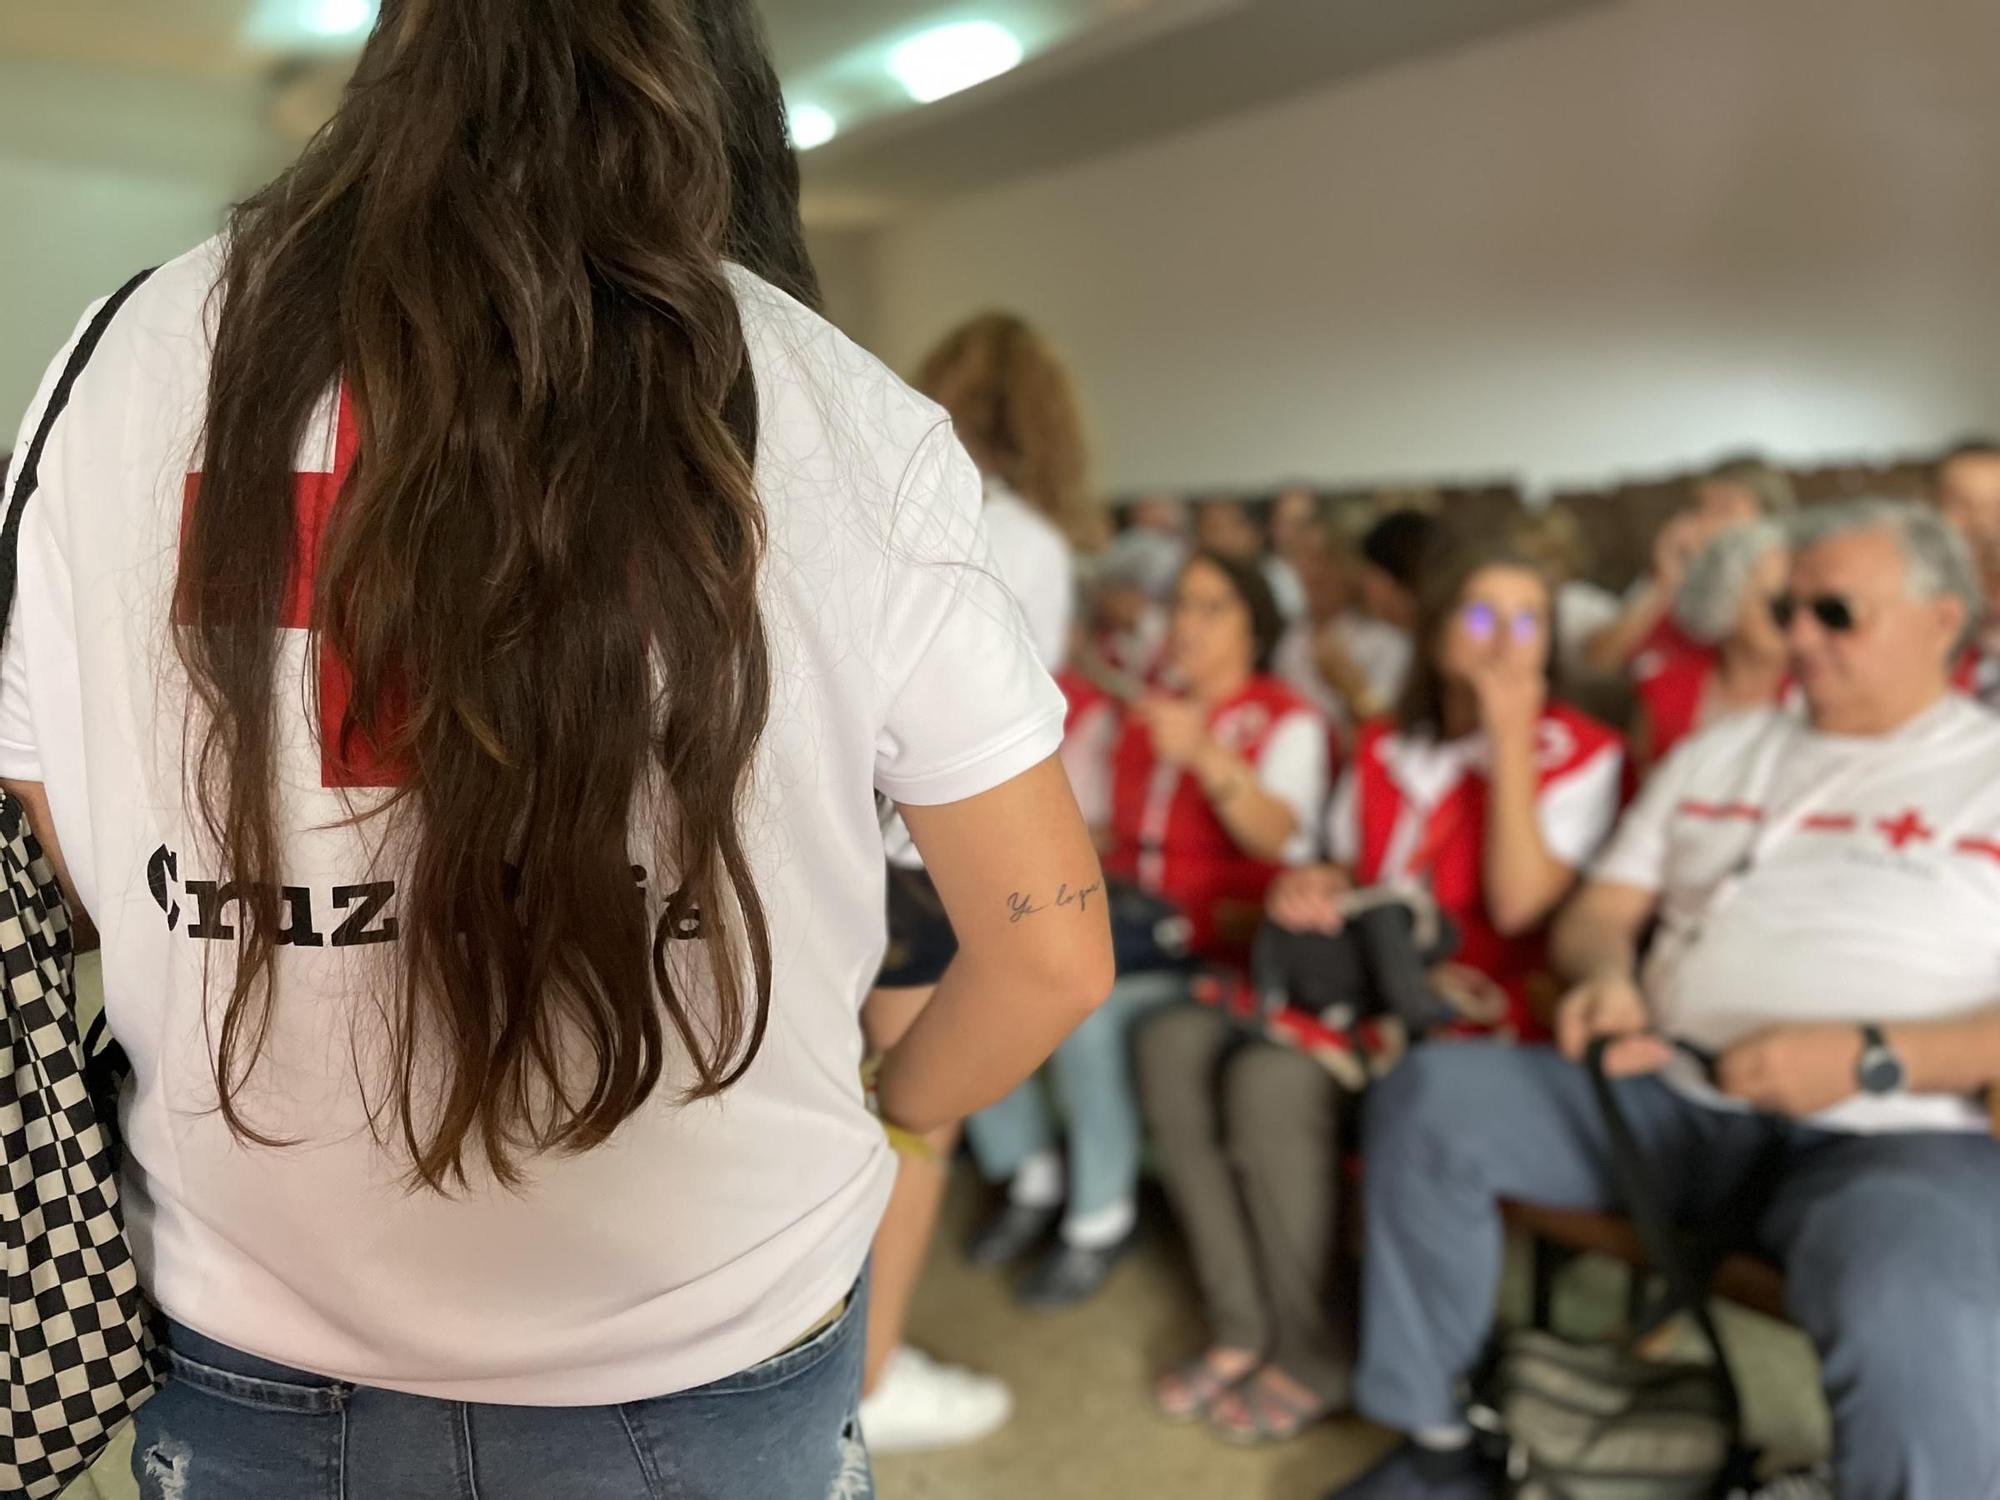 Encuentro de 200 voluntarios de Cruz Roja en Langreo